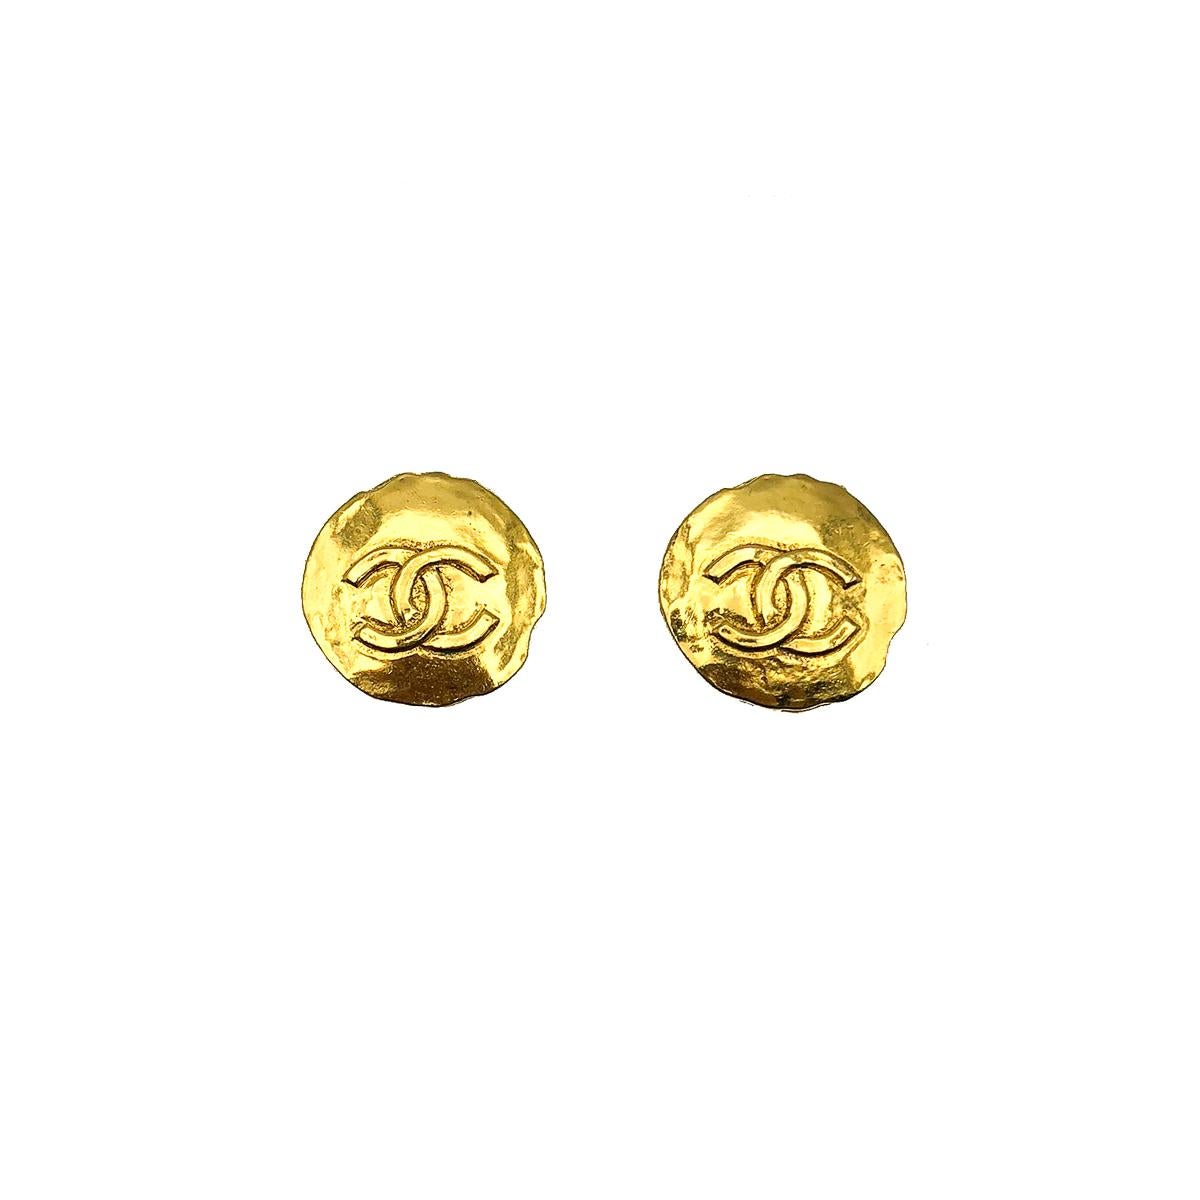 Une ancienne paire de boucles d'oreilles Vintage CC Logo Coin. Datant de la fin des années 70, début des années 80. Fabriqué en métal plaqué or. Le logo CC emboîté sur un disque byzantin inspiré d'une pièce de monnaie. En très bon état, sans dommage